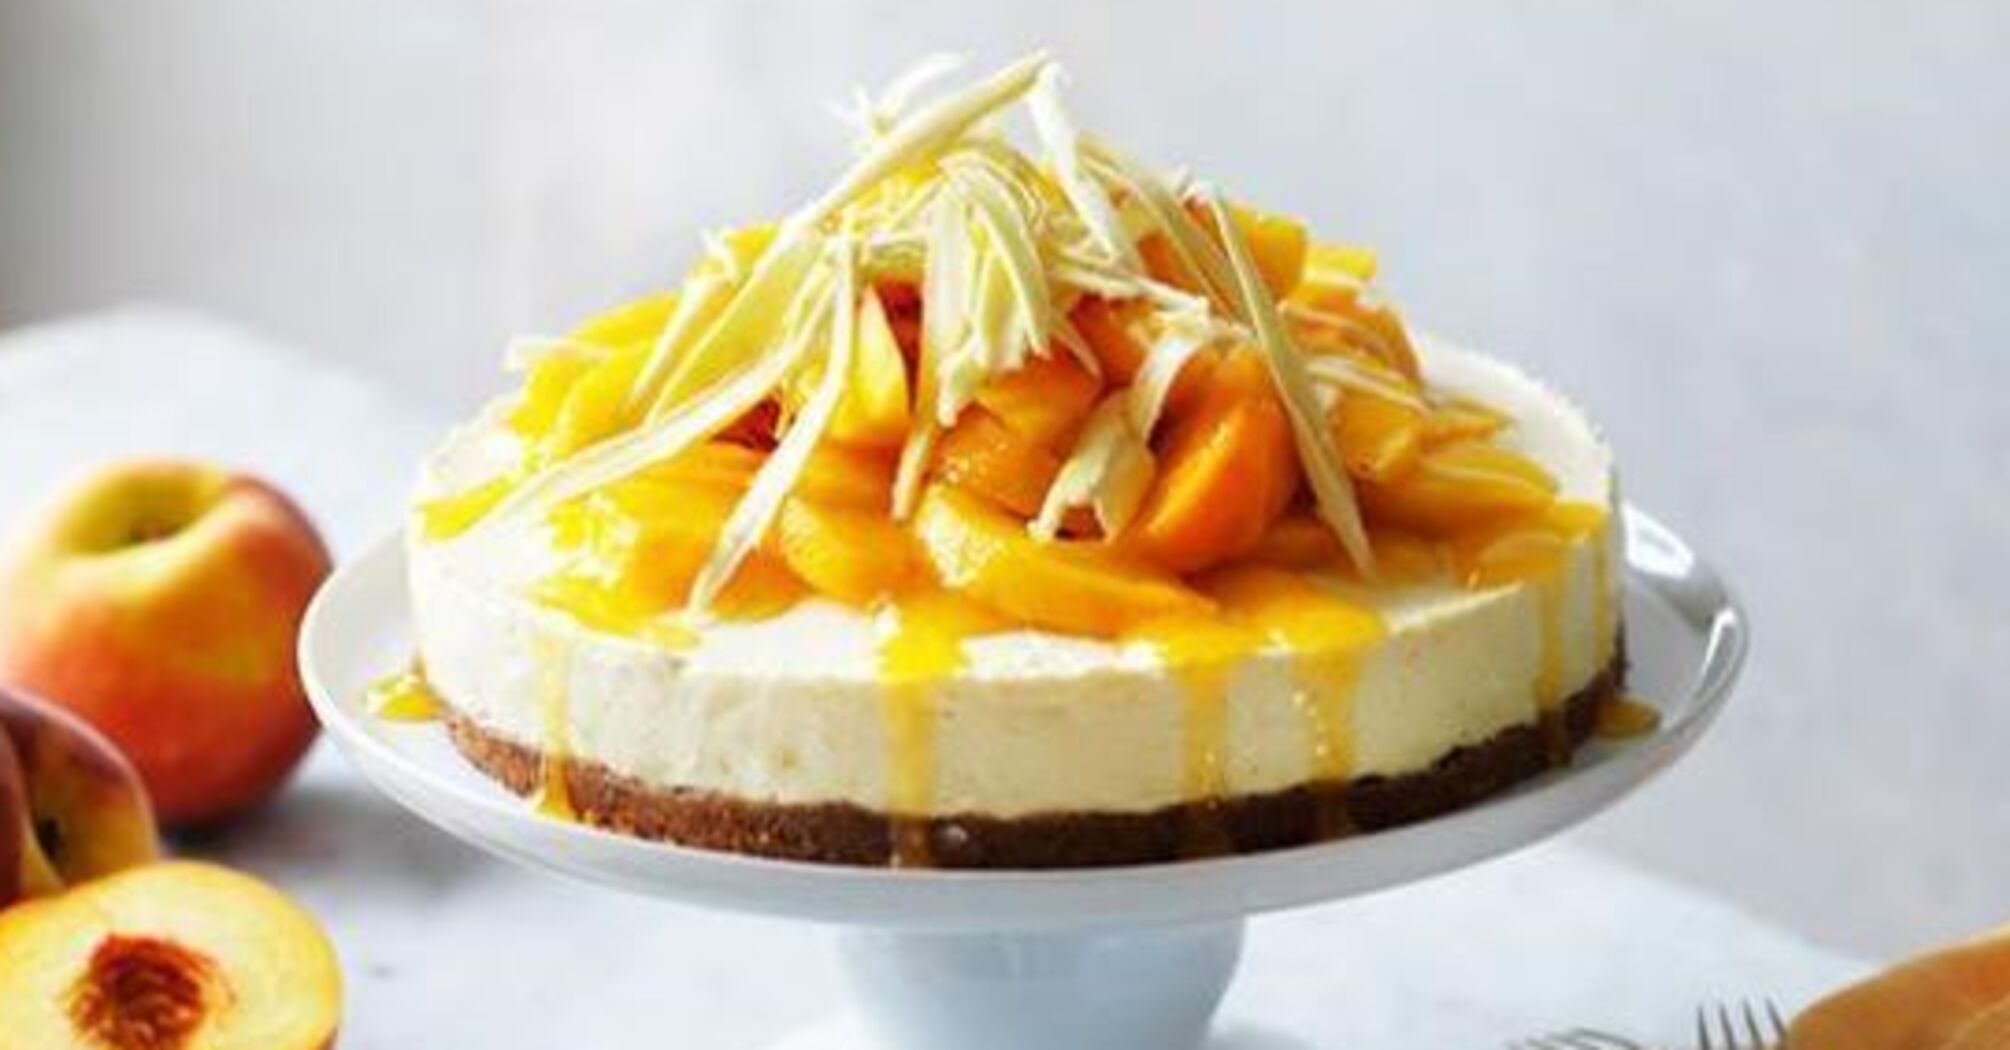 No-bake peach dessert recipe